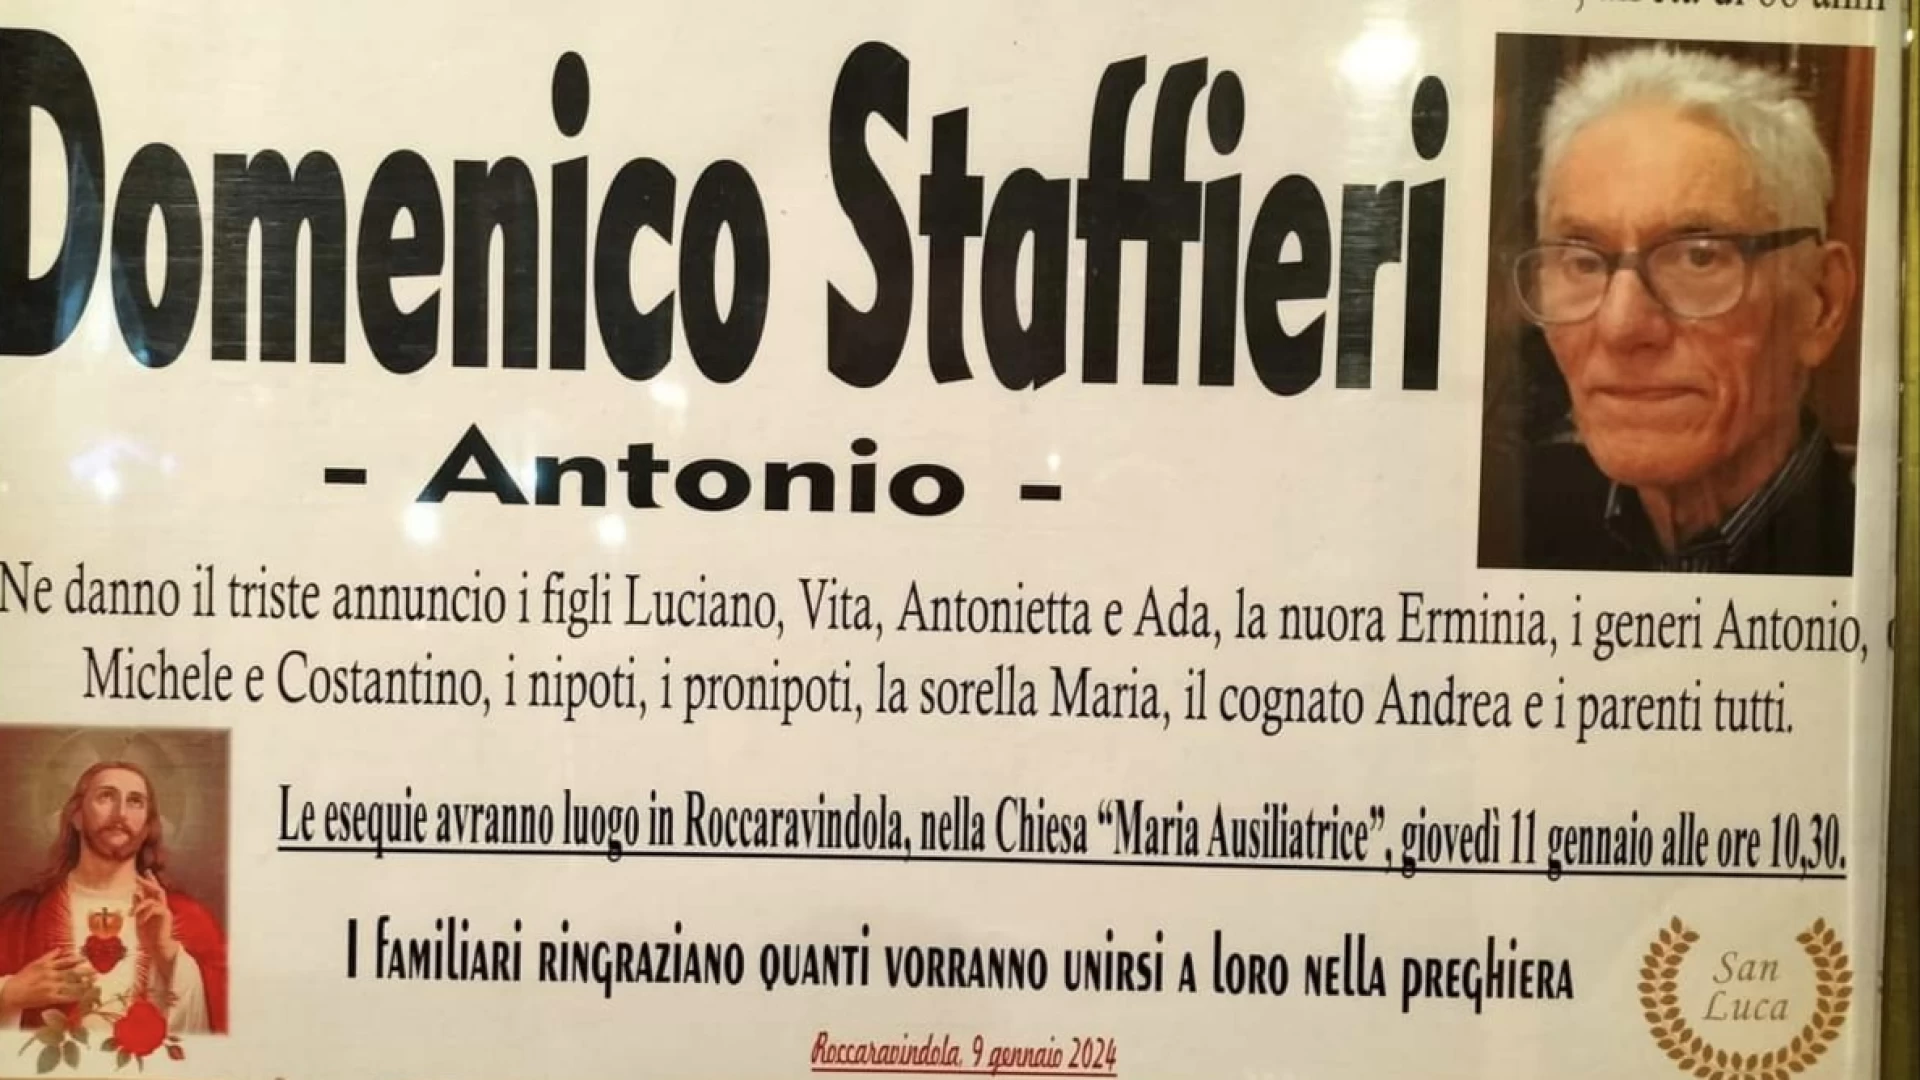 Necrologio: Domenico Staffieri Antonio. Le condoglianze della nostra redazione.